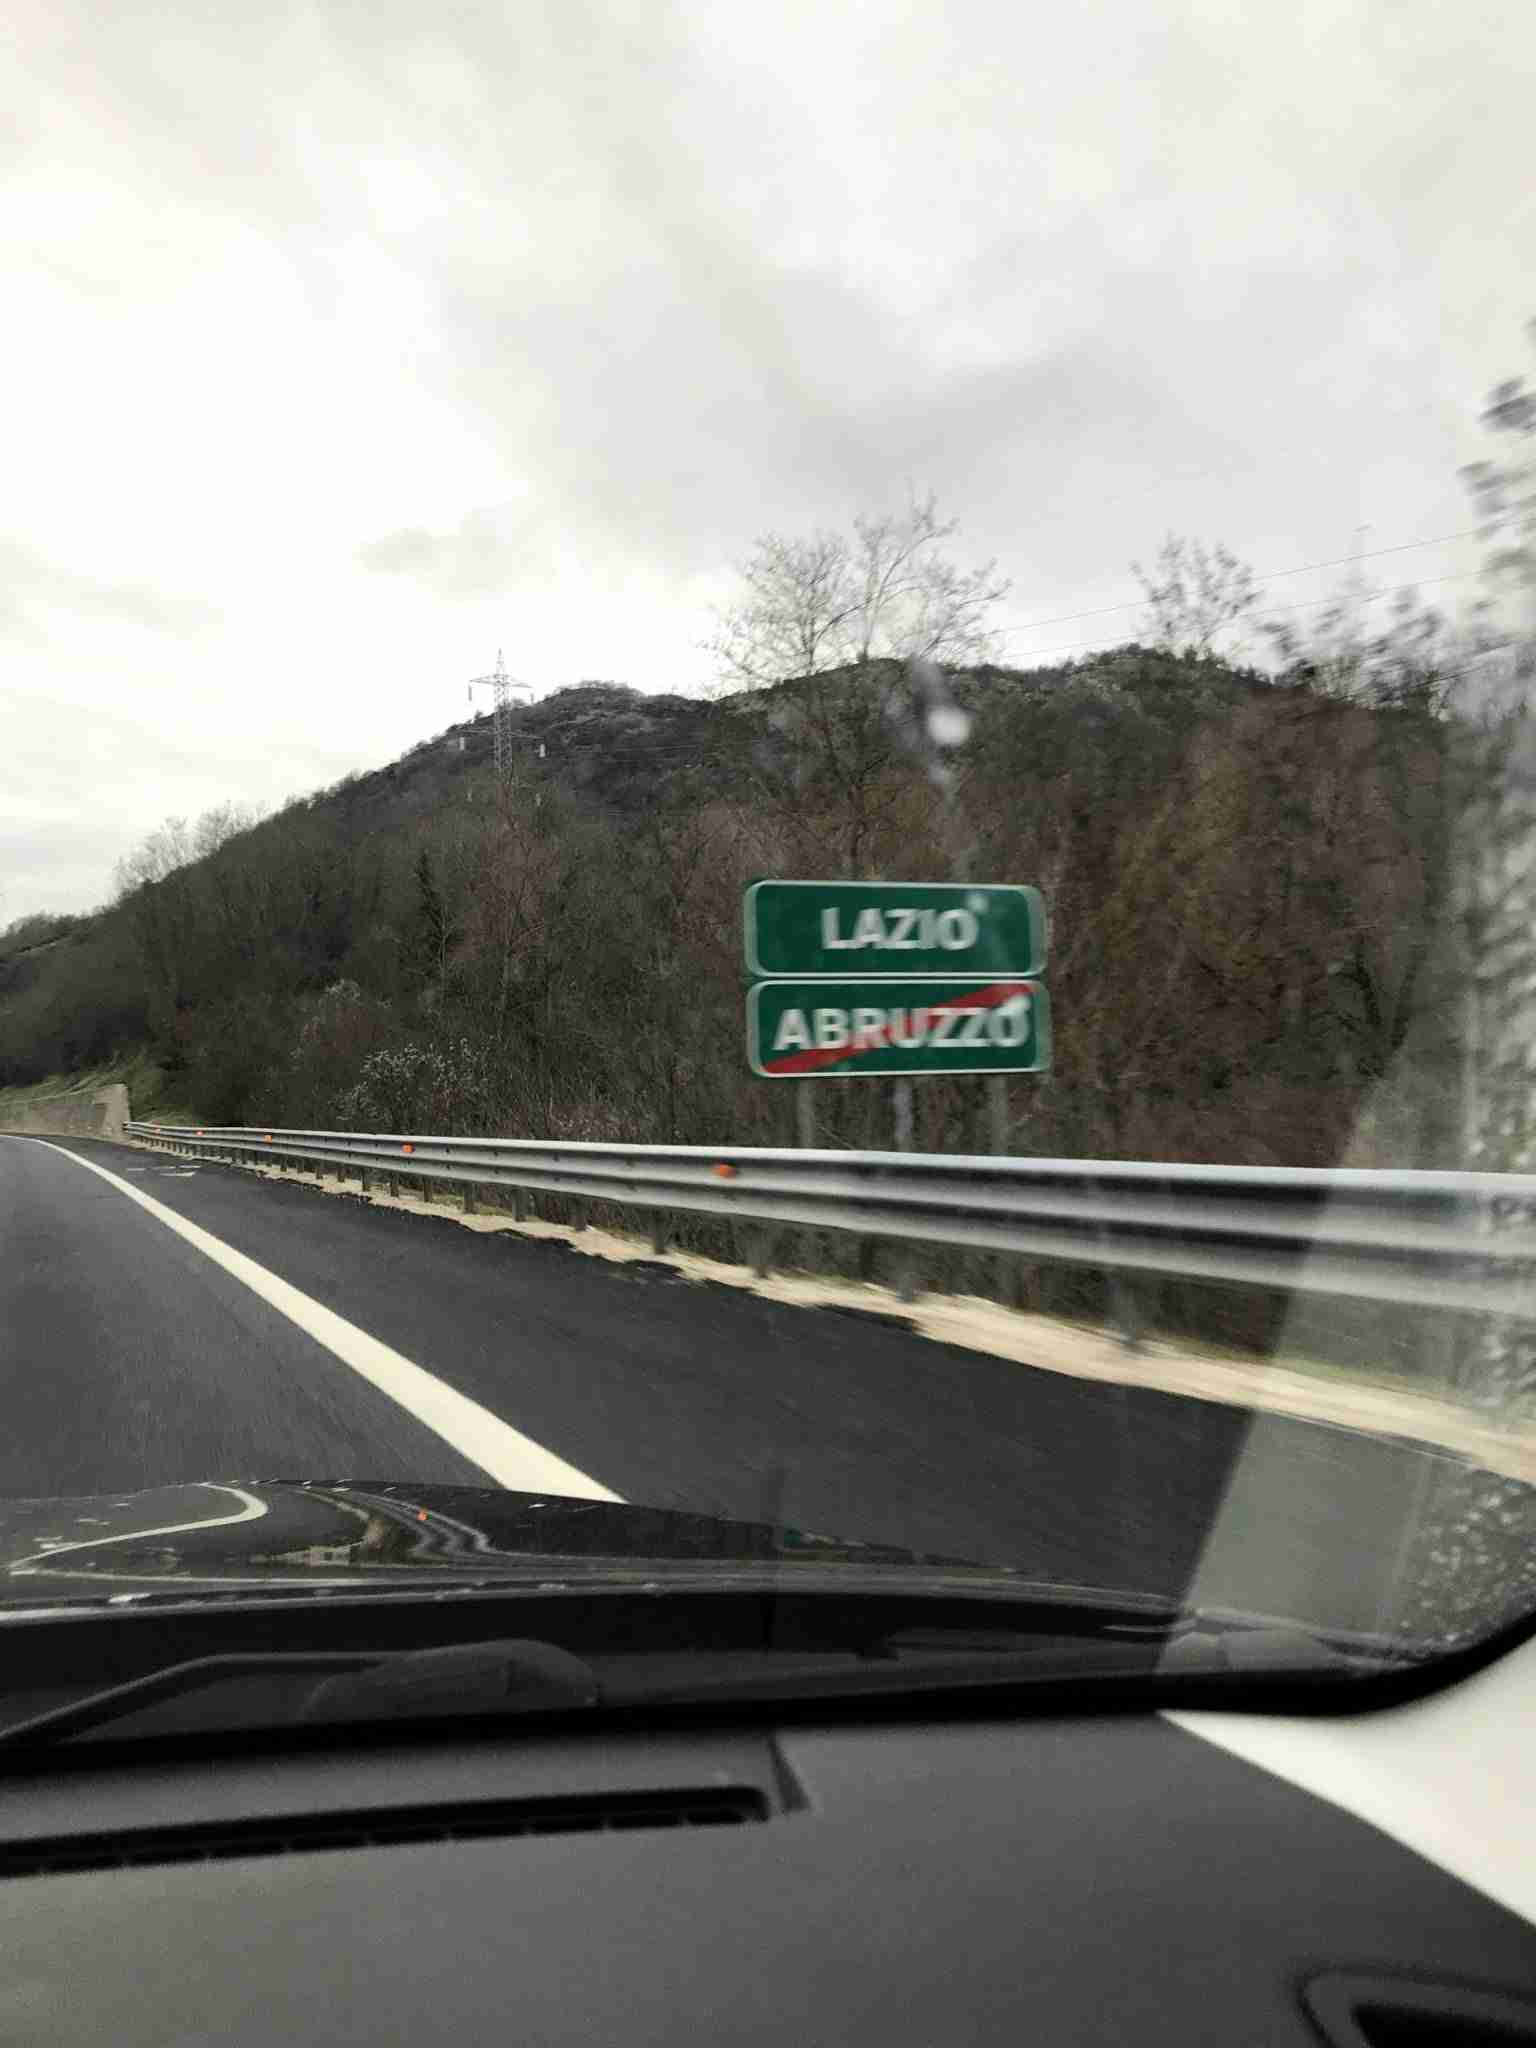 Leaving Abruzzo for Lazio